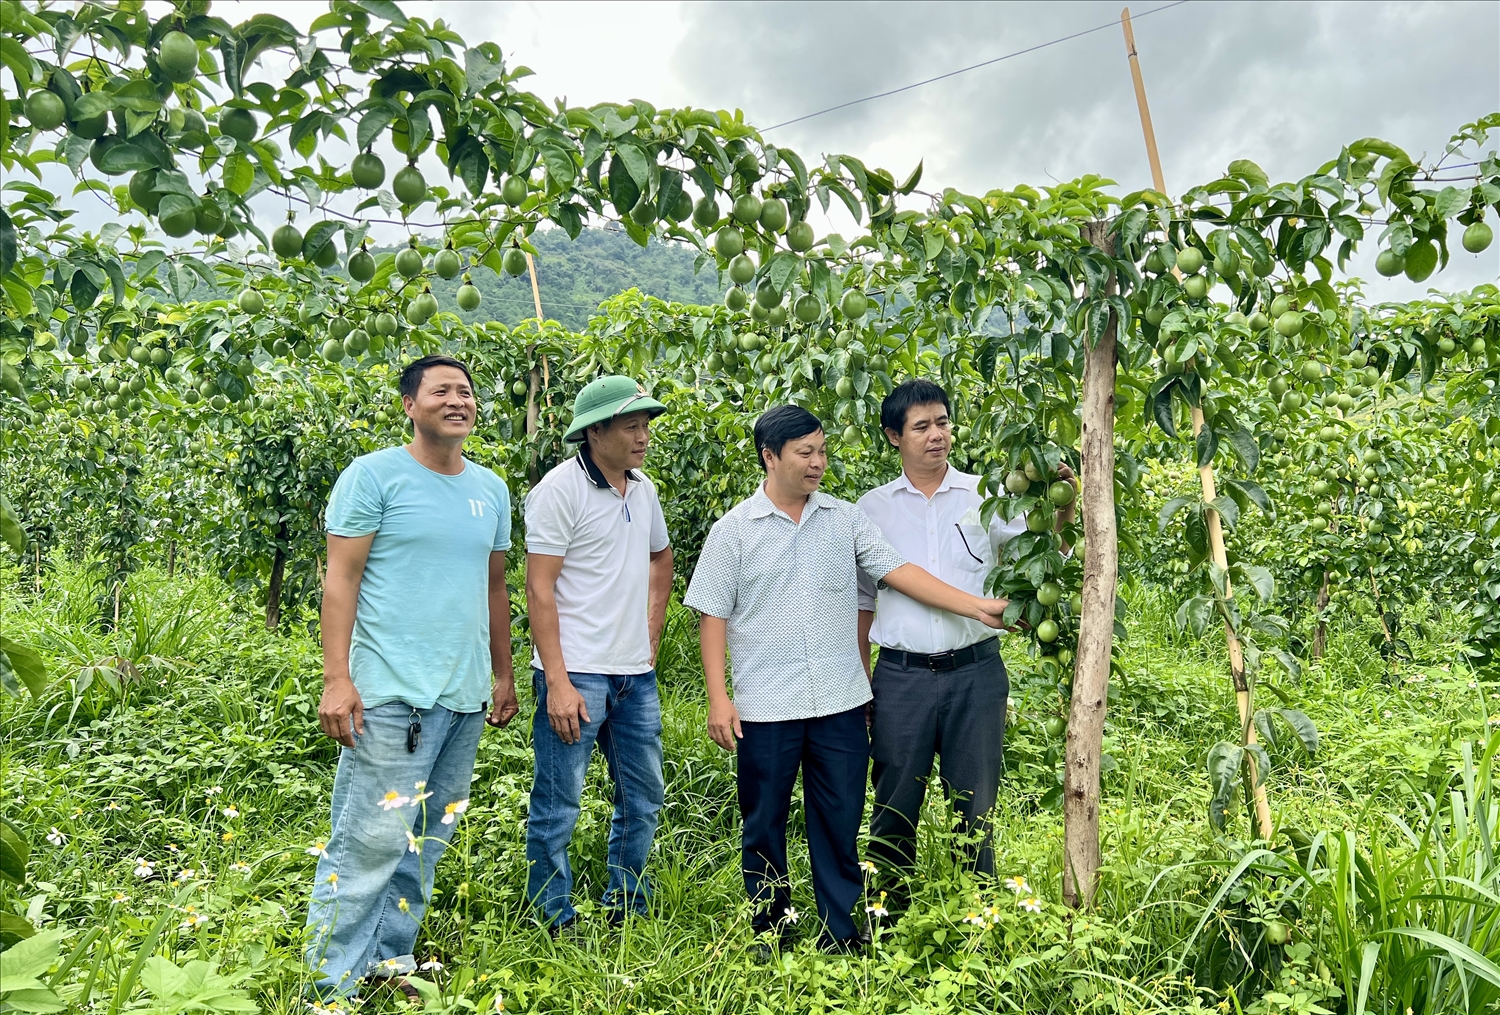 Tỉnh Gia Lai chú trọng chú trọng khâu tổ chức kết nối giữa doanh nghiệp - HTX với nông dân từ khâu giống, tiêu thụ, chế biến và xuất khẩu